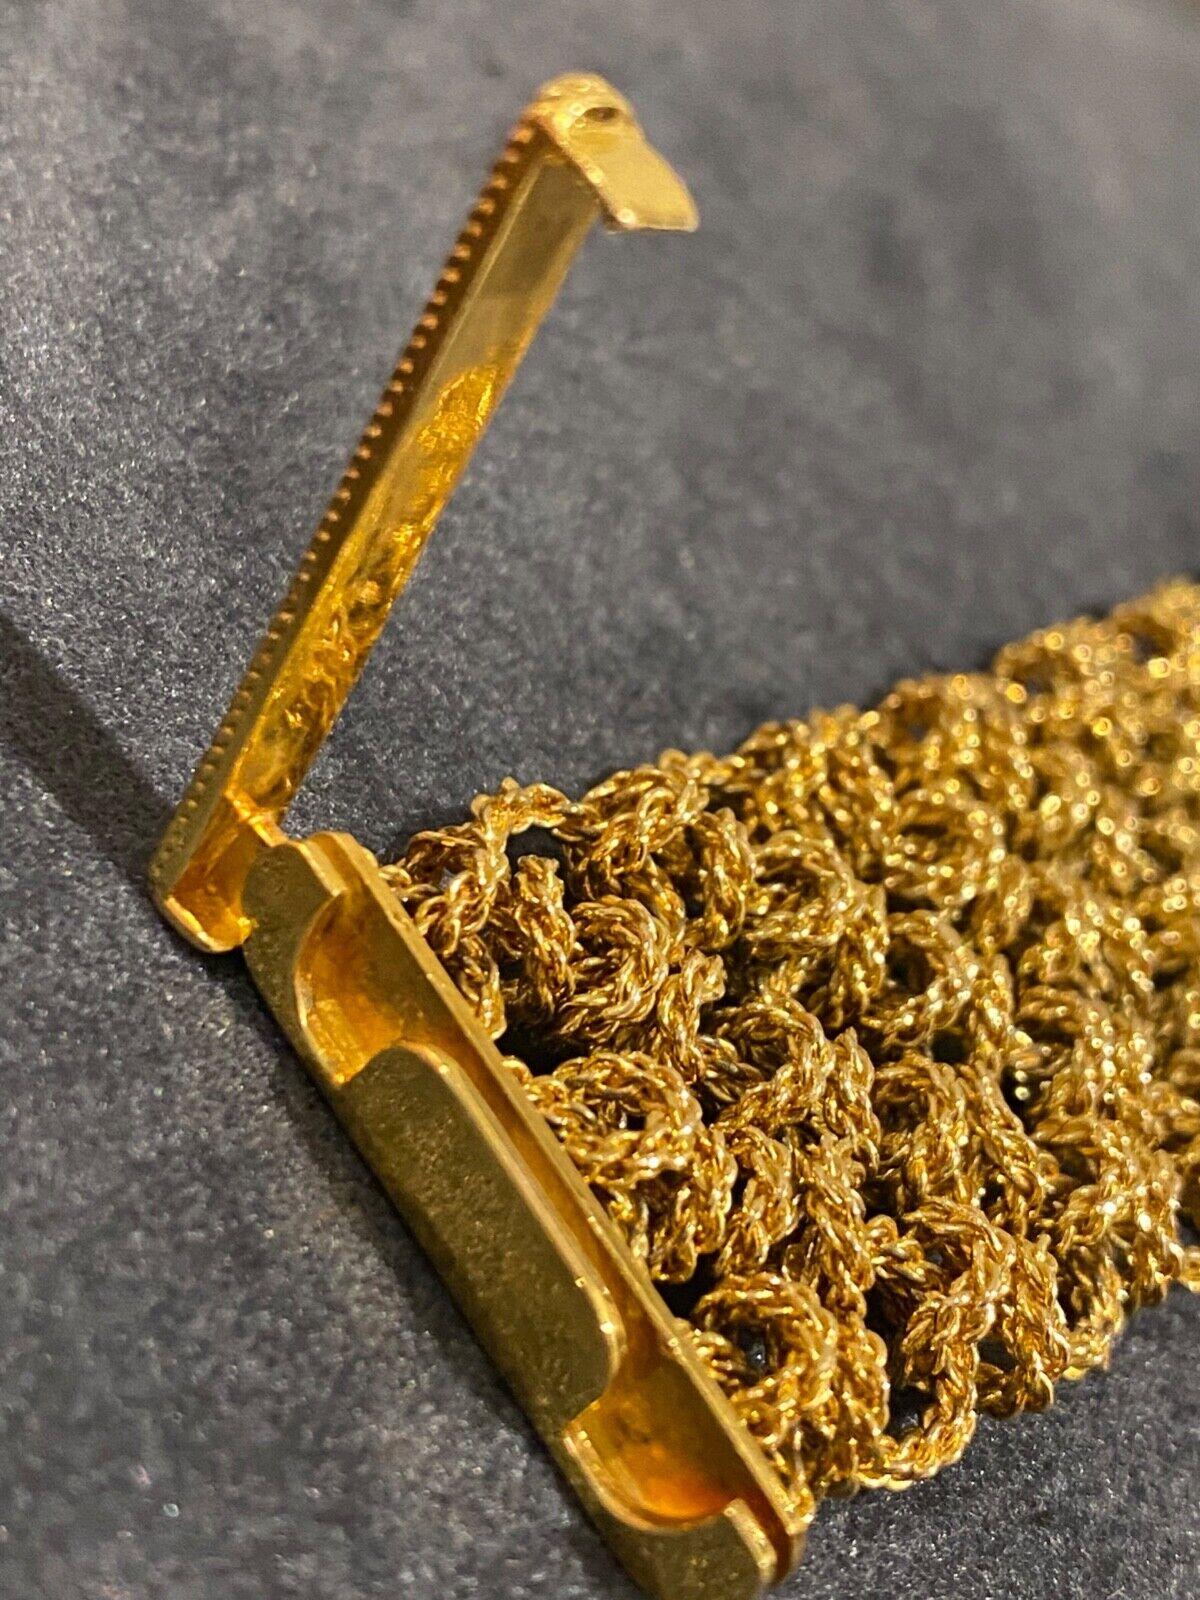 Bueche-Girod 18k Gold & 5.00 Diamond Knitted Bracelet Dress Watch, Ref Y 9801 3